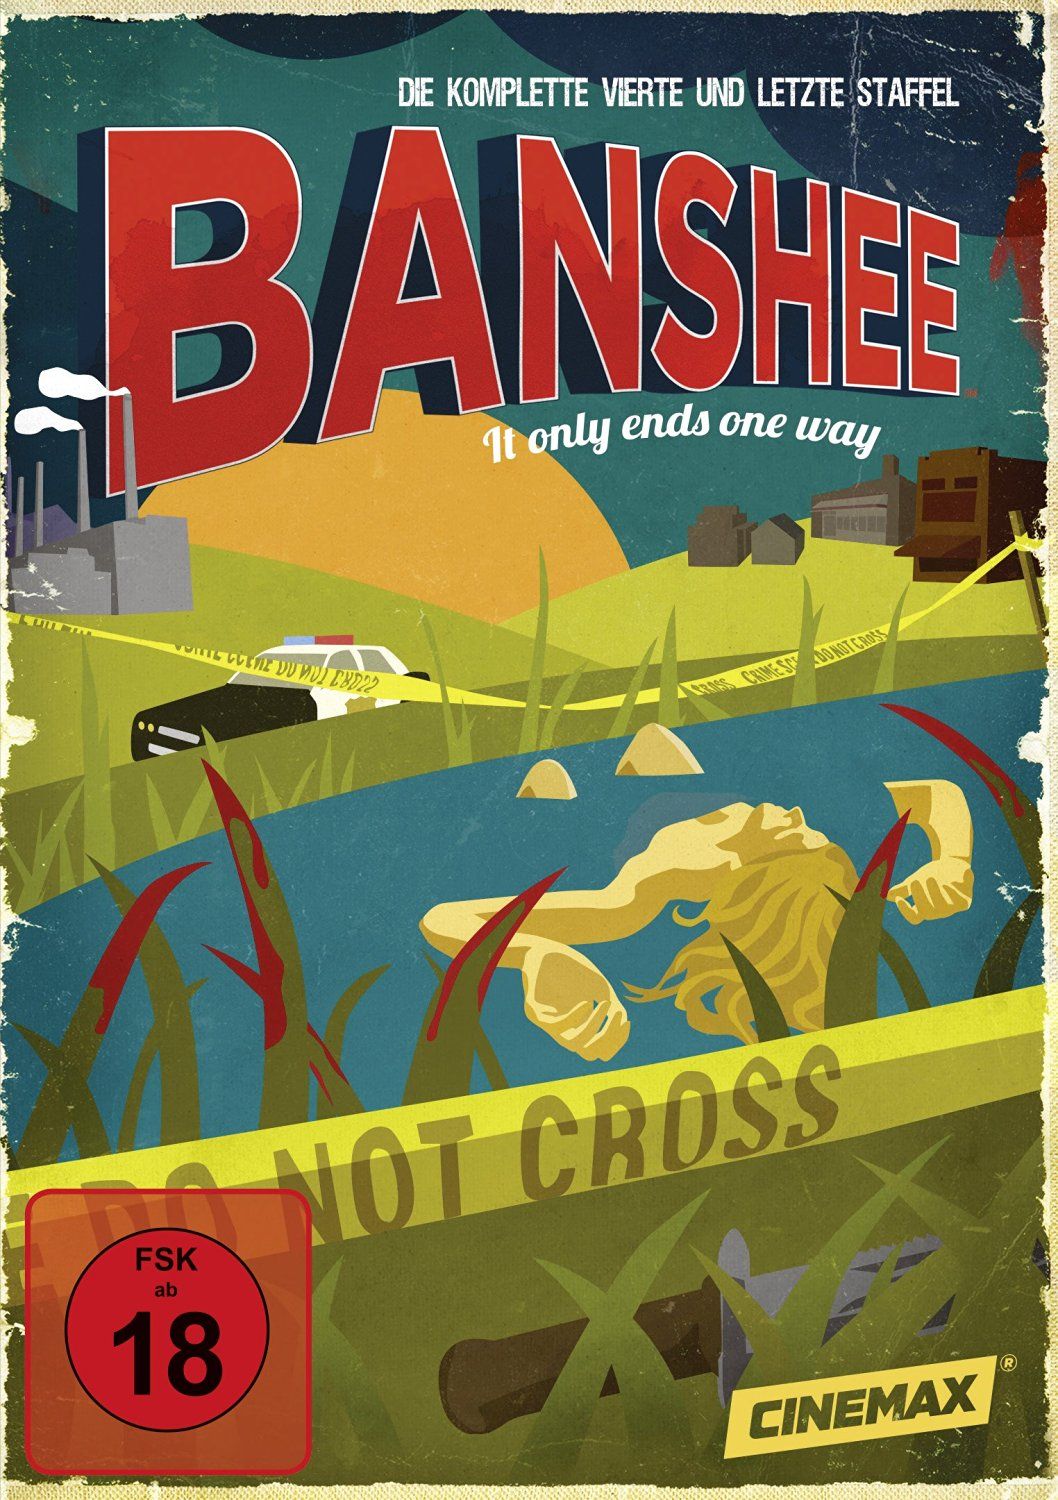 Banshee - Die komplette vierte Staffel (3 Discs)